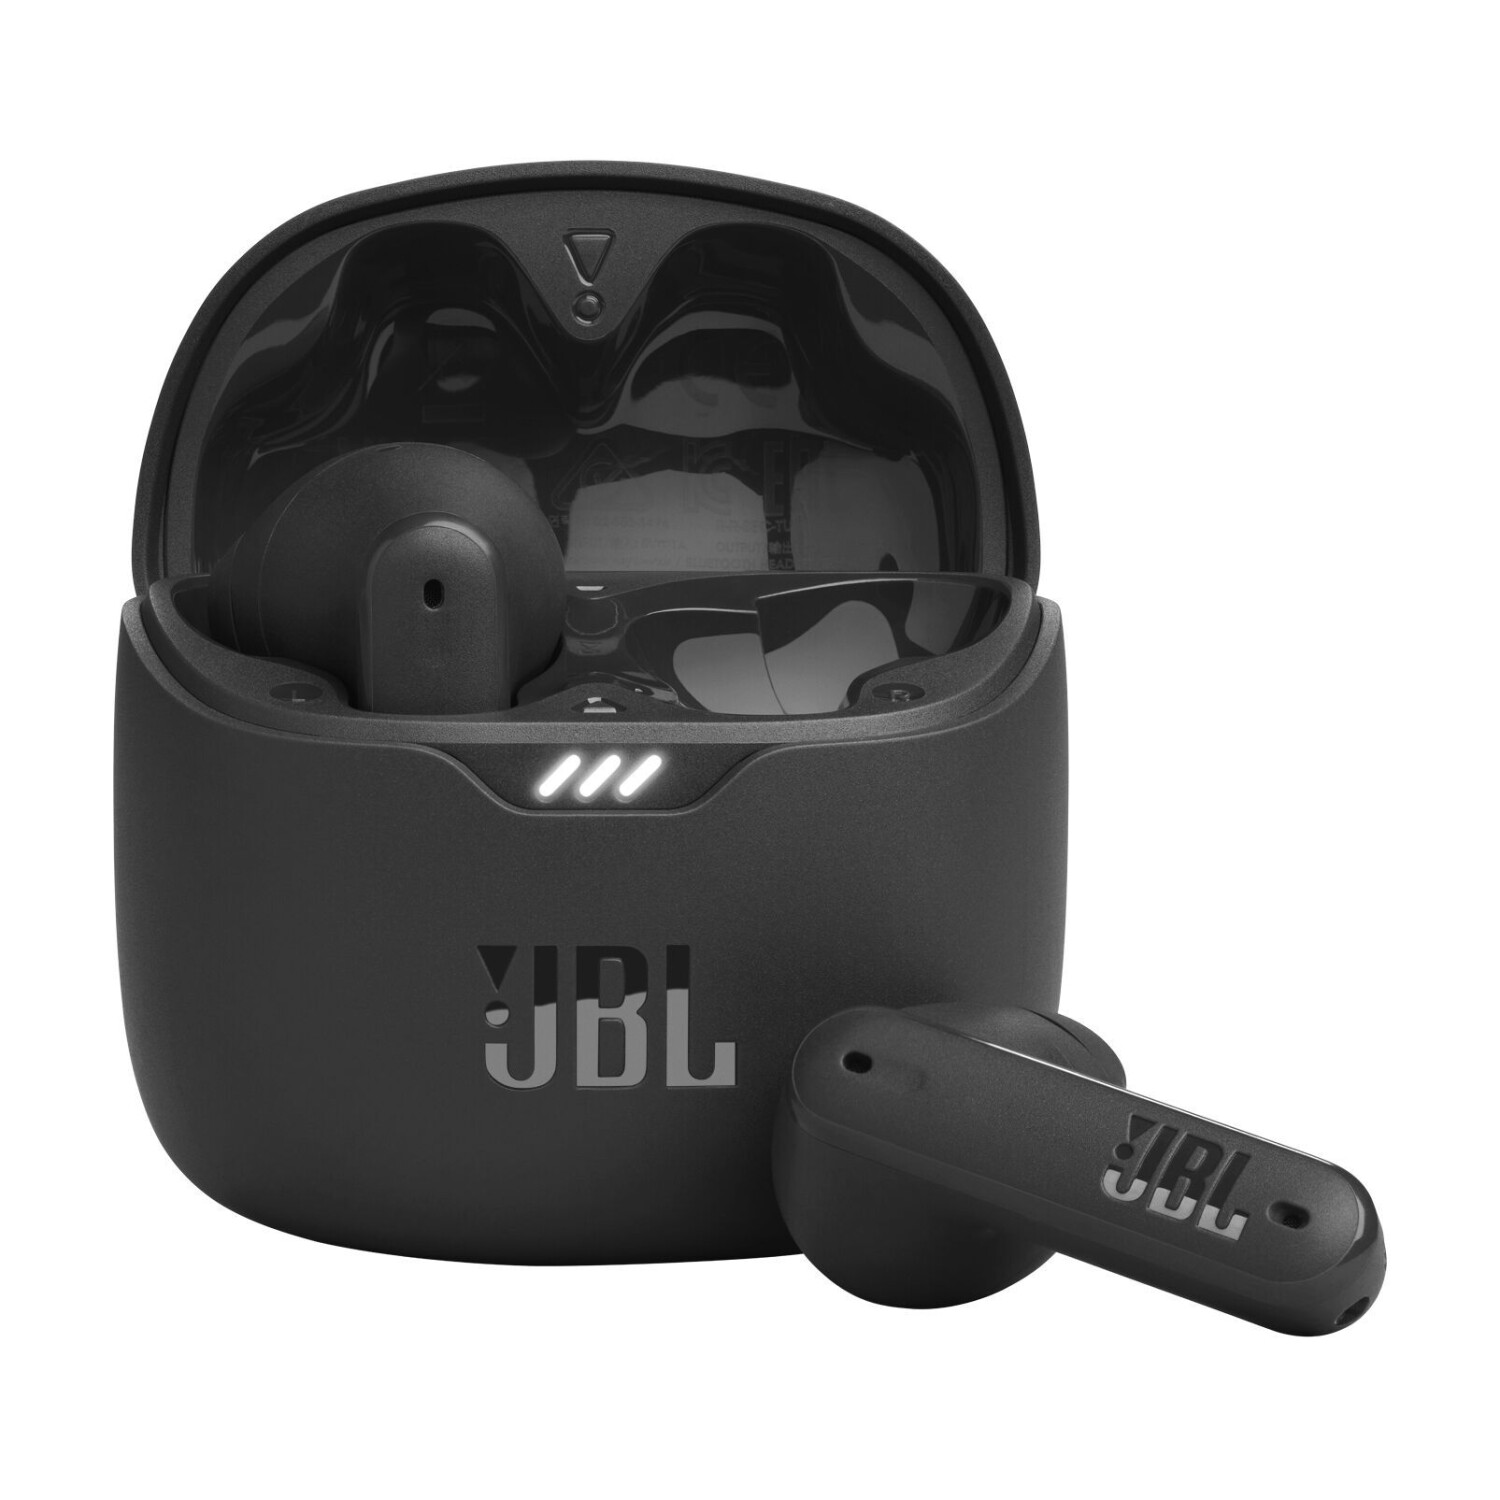  JBL Auriculares con cancelación de ruido con cable en vivo,  alimentados por USB, color negro : Electrónica